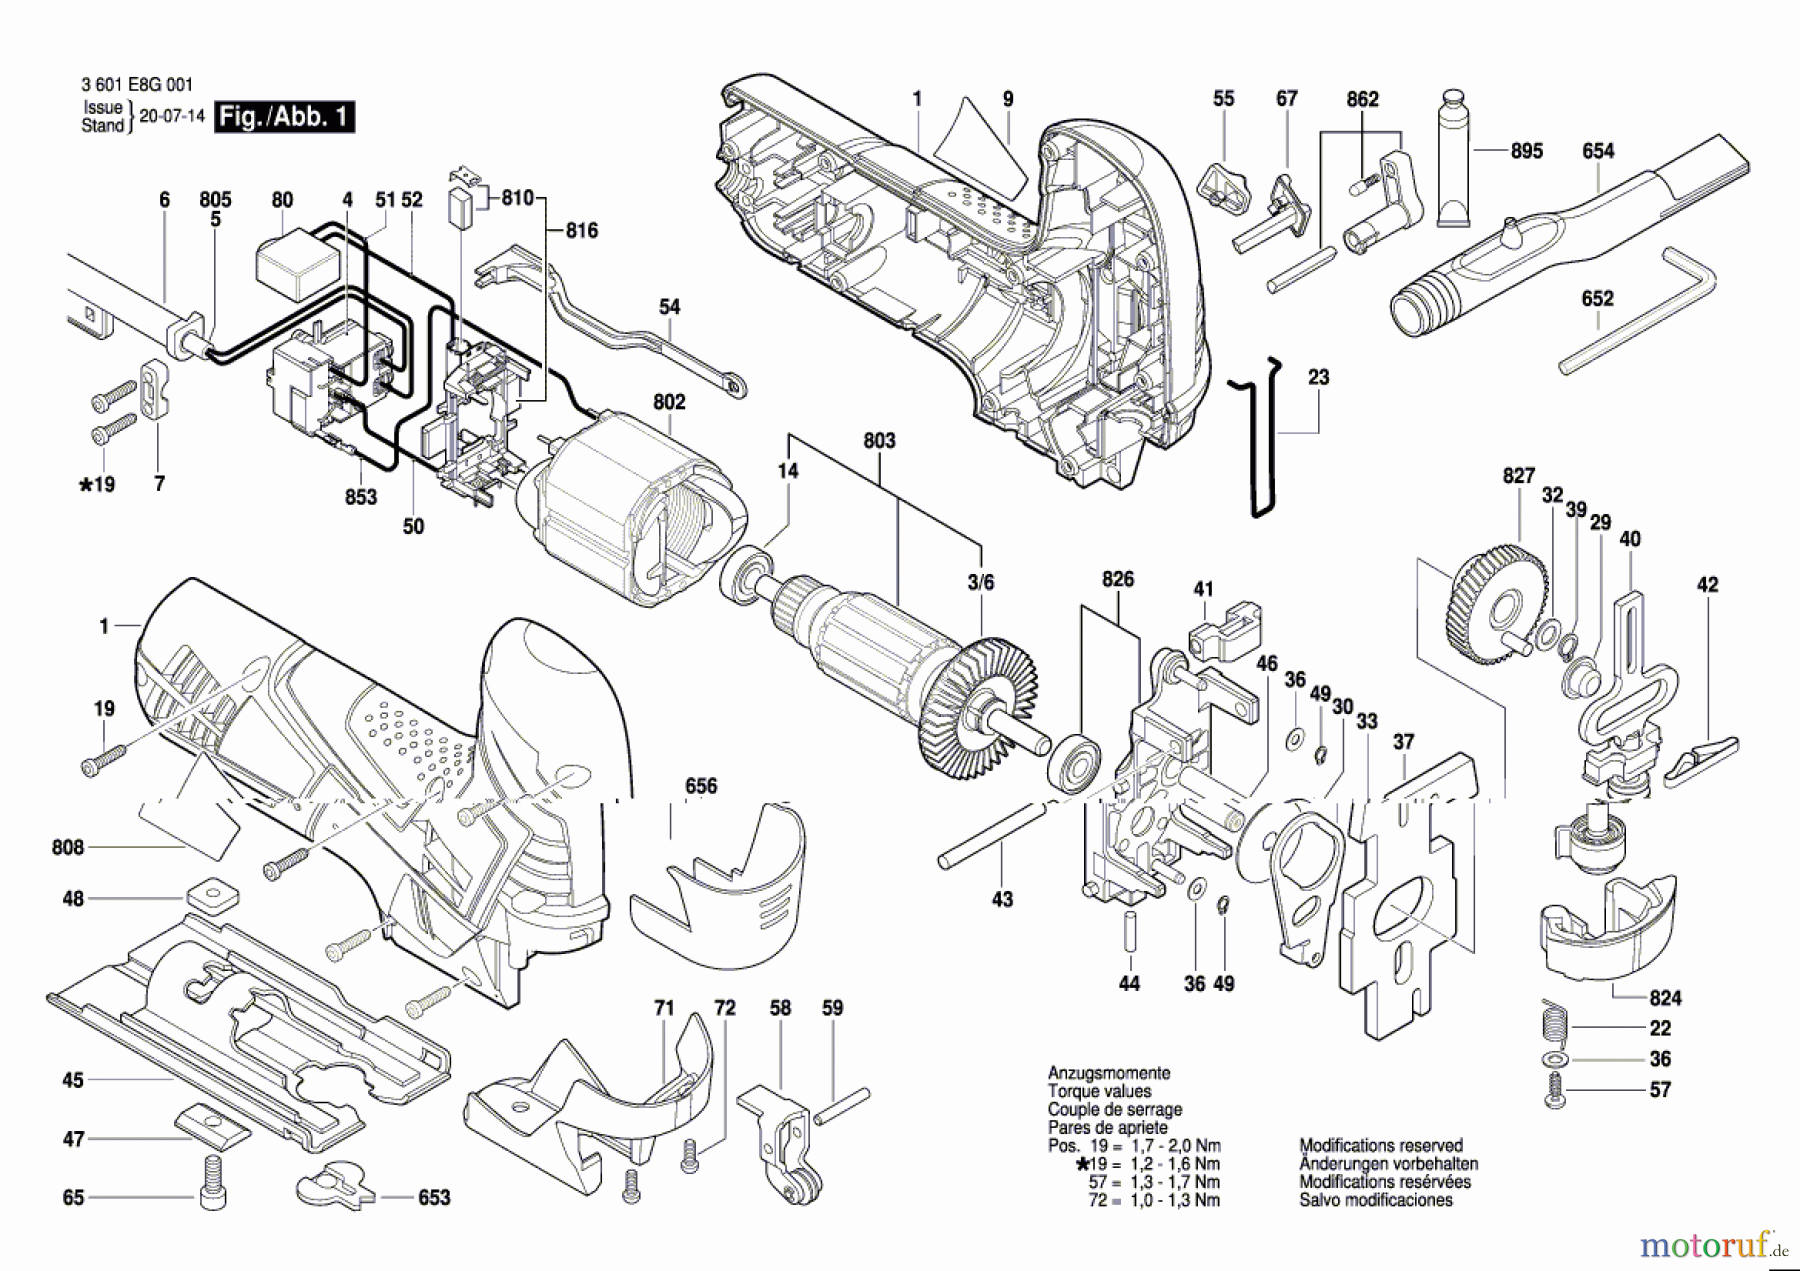  Bosch Werkzeug Stichsäge GST 90 E Seite 1